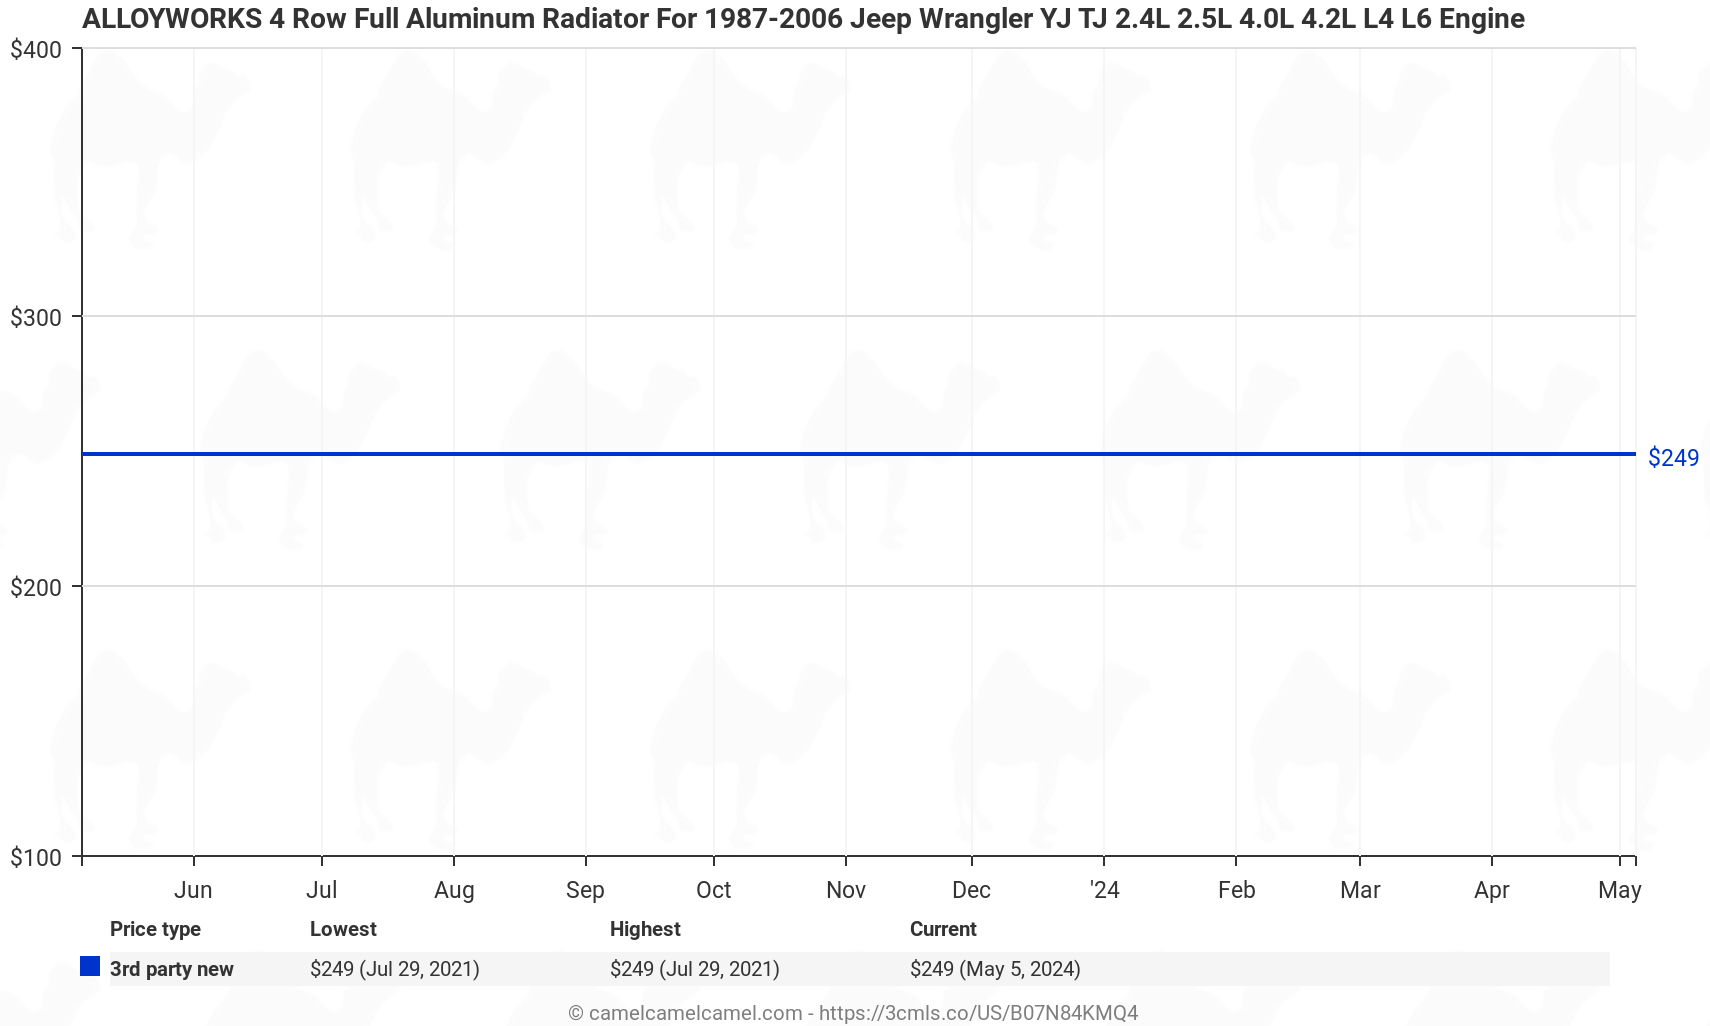 ALLOYWORKS 4 Row Full Aluminum Radiator For 1987-2006 Jeep Wrangler YJ TJ 2.4L 2.5L 4.0L 4.2L L4 L6 Engine - Price History: B07N84KMQ4